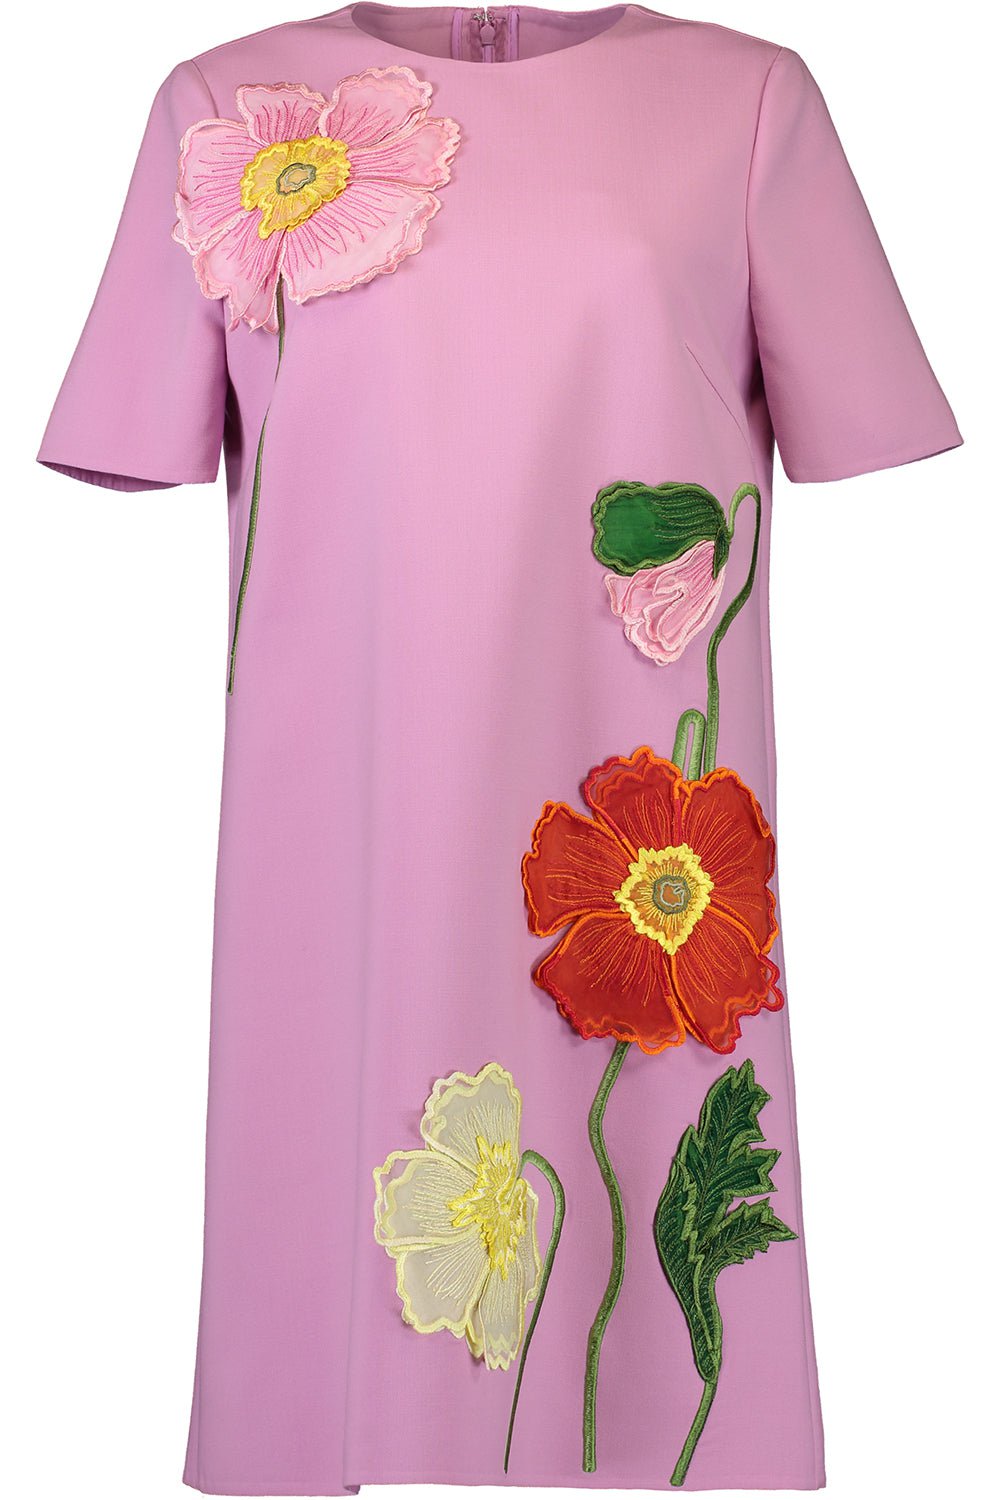 OSCAR DE LA RENTA-Painted Poppies Shift Dress - Lupine-